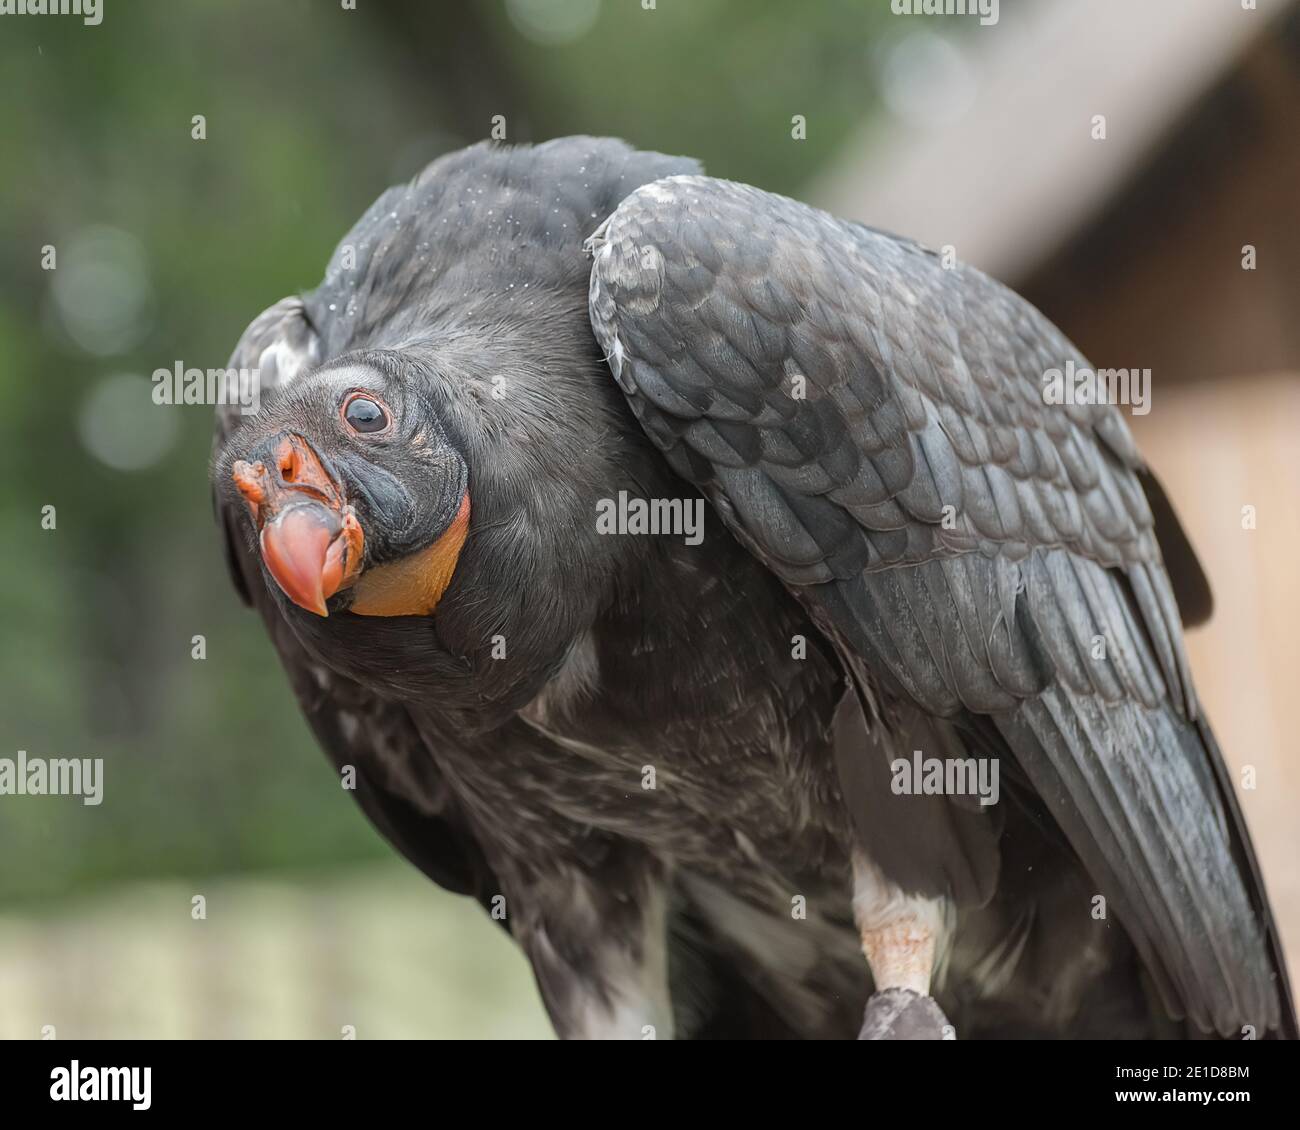 California condor, Gymnogyps californianus, a New World vulture. Birds show Close up Stock Photo